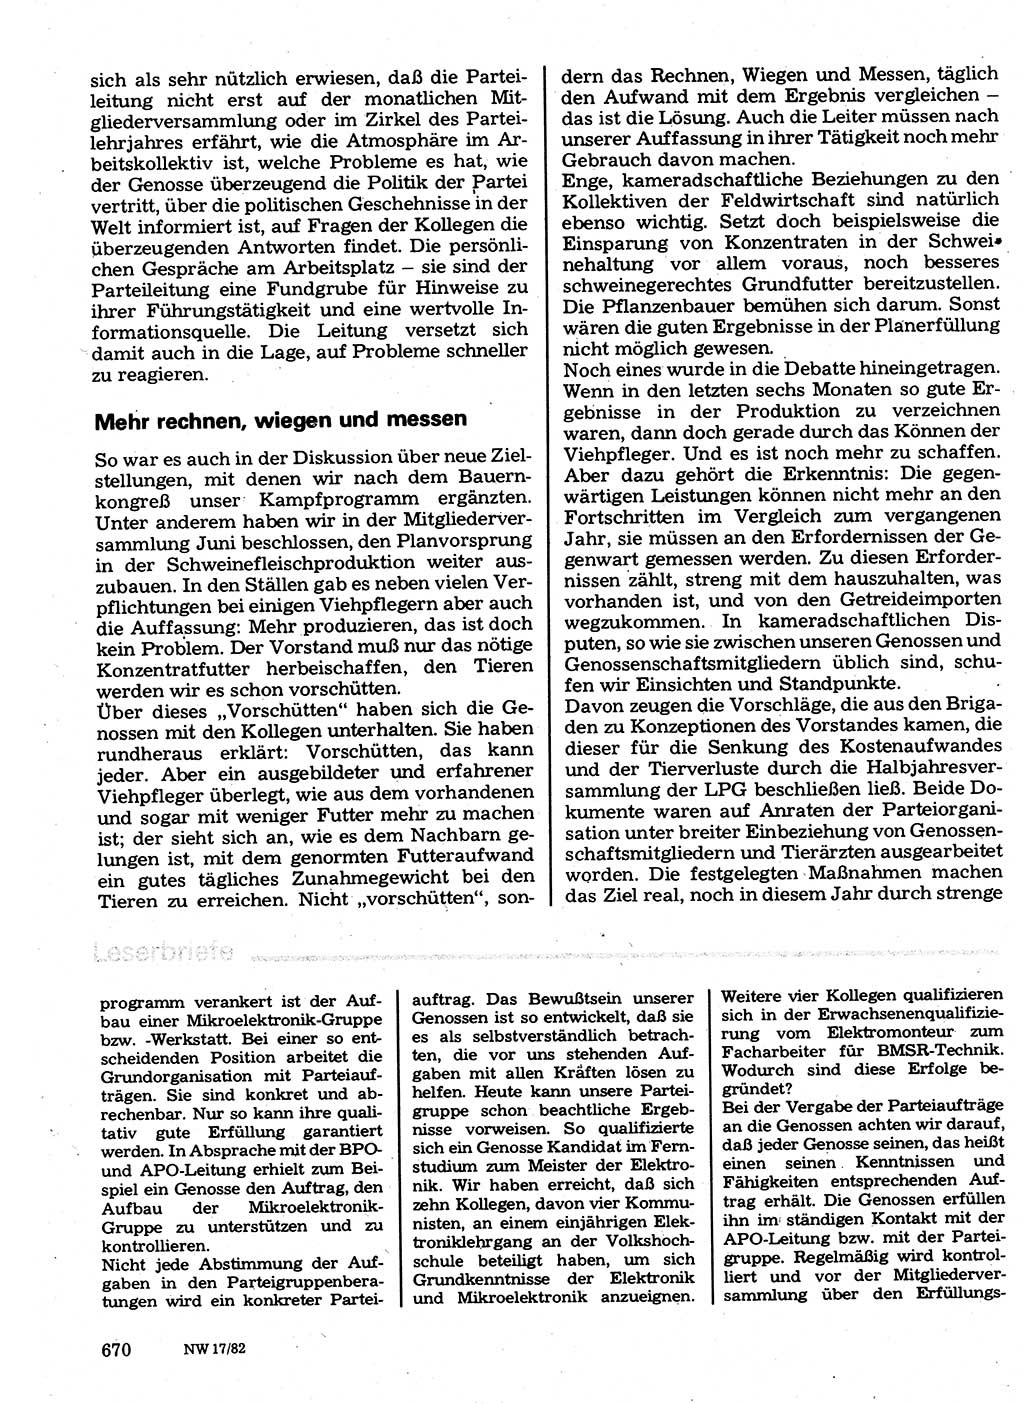 Neuer Weg (NW), Organ des Zentralkomitees (ZK) der SED (Sozialistische Einheitspartei Deutschlands) für Fragen des Parteilebens, 37. Jahrgang [Deutsche Demokratische Republik (DDR)] 1982, Seite 670 (NW ZK SED DDR 1982, S. 670)